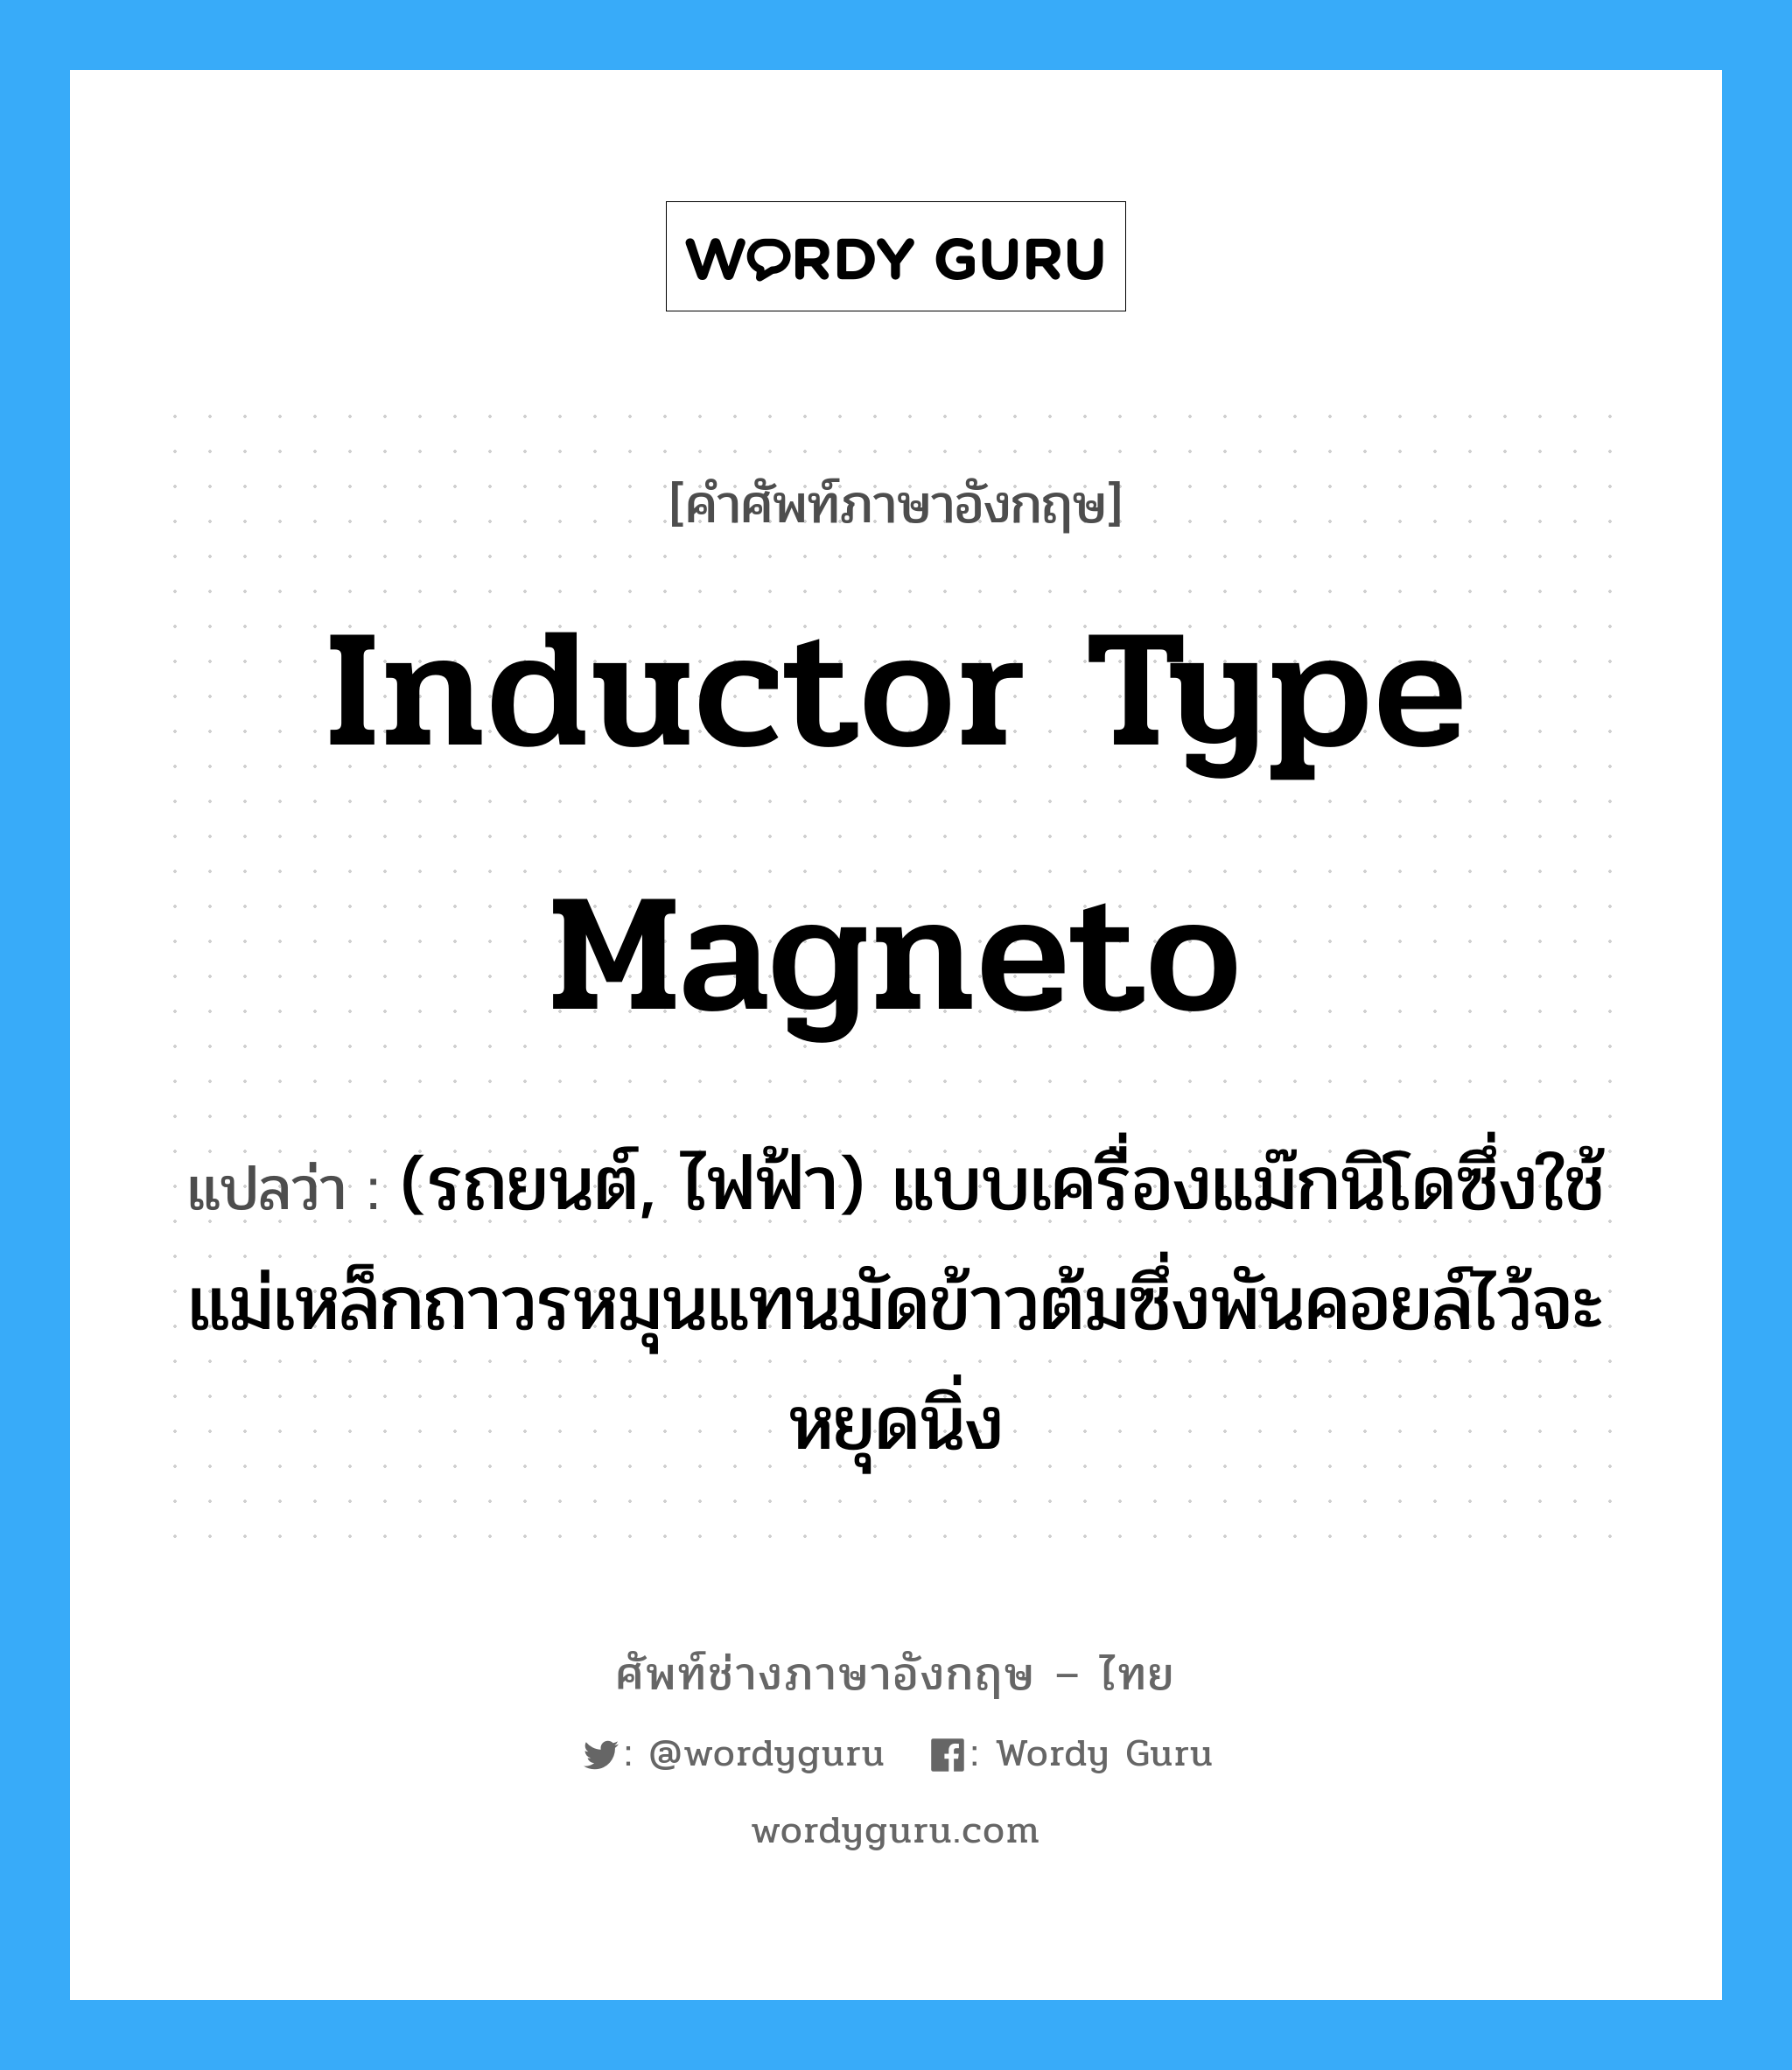 inductor type magneto แปลว่า?, คำศัพท์ช่างภาษาอังกฤษ - ไทย inductor type magneto คำศัพท์ภาษาอังกฤษ inductor type magneto แปลว่า (รถยนต์, ไฟฟ้า) แบบเครื่องแม๊กนิโดซึ่งใช้แม่เหล็กถาวรหมุนแทนมัดข้าวต้มซึ่งพันคอยล์ไว้จะหยุดนิ่ง